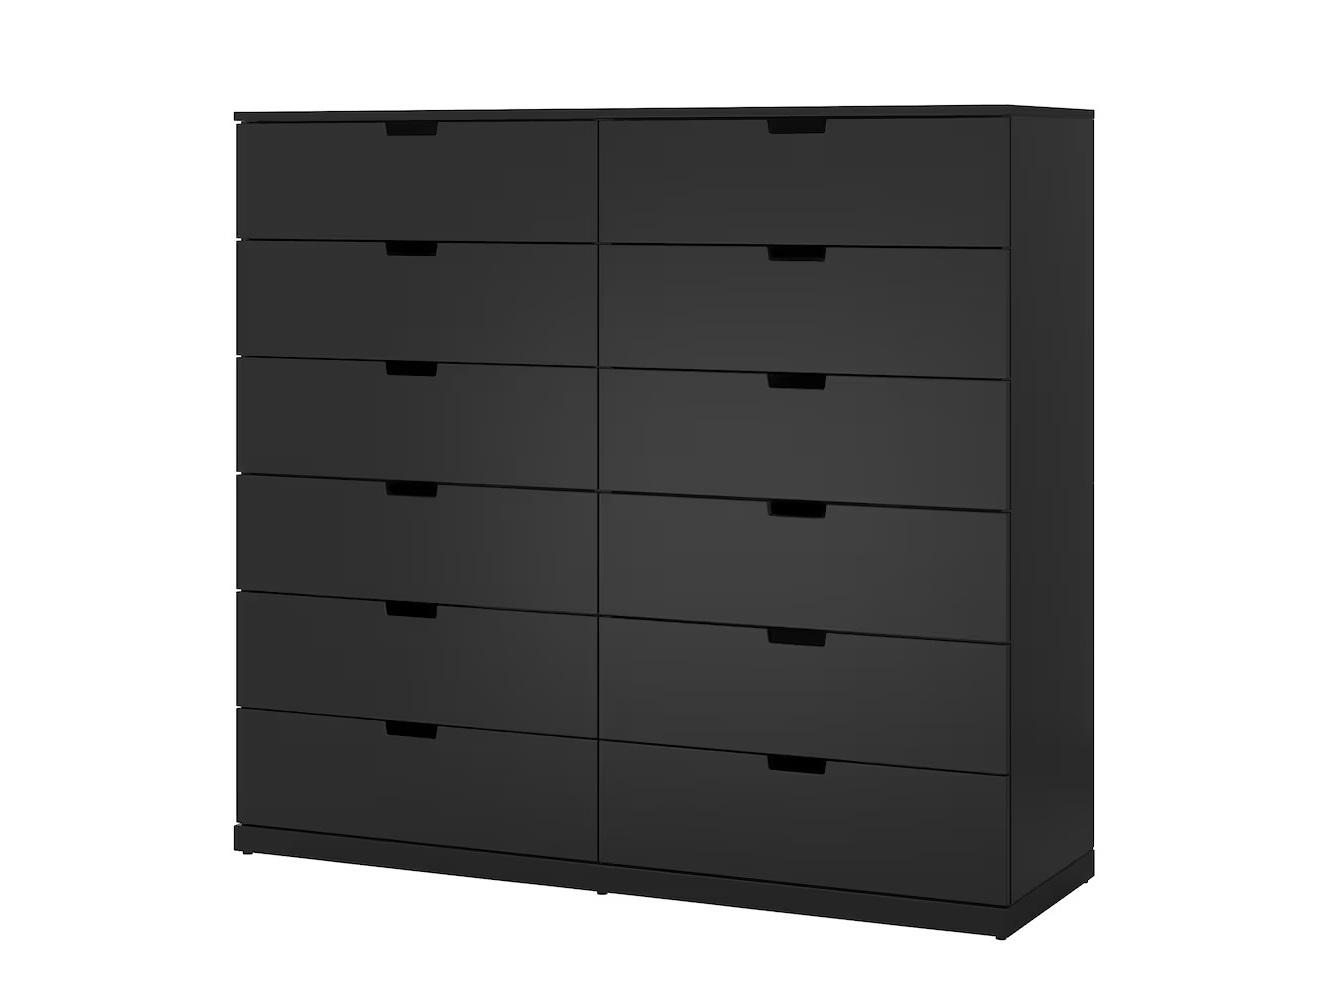 Комод Нордли 16 black ИКЕА (IKEA) изображение товара